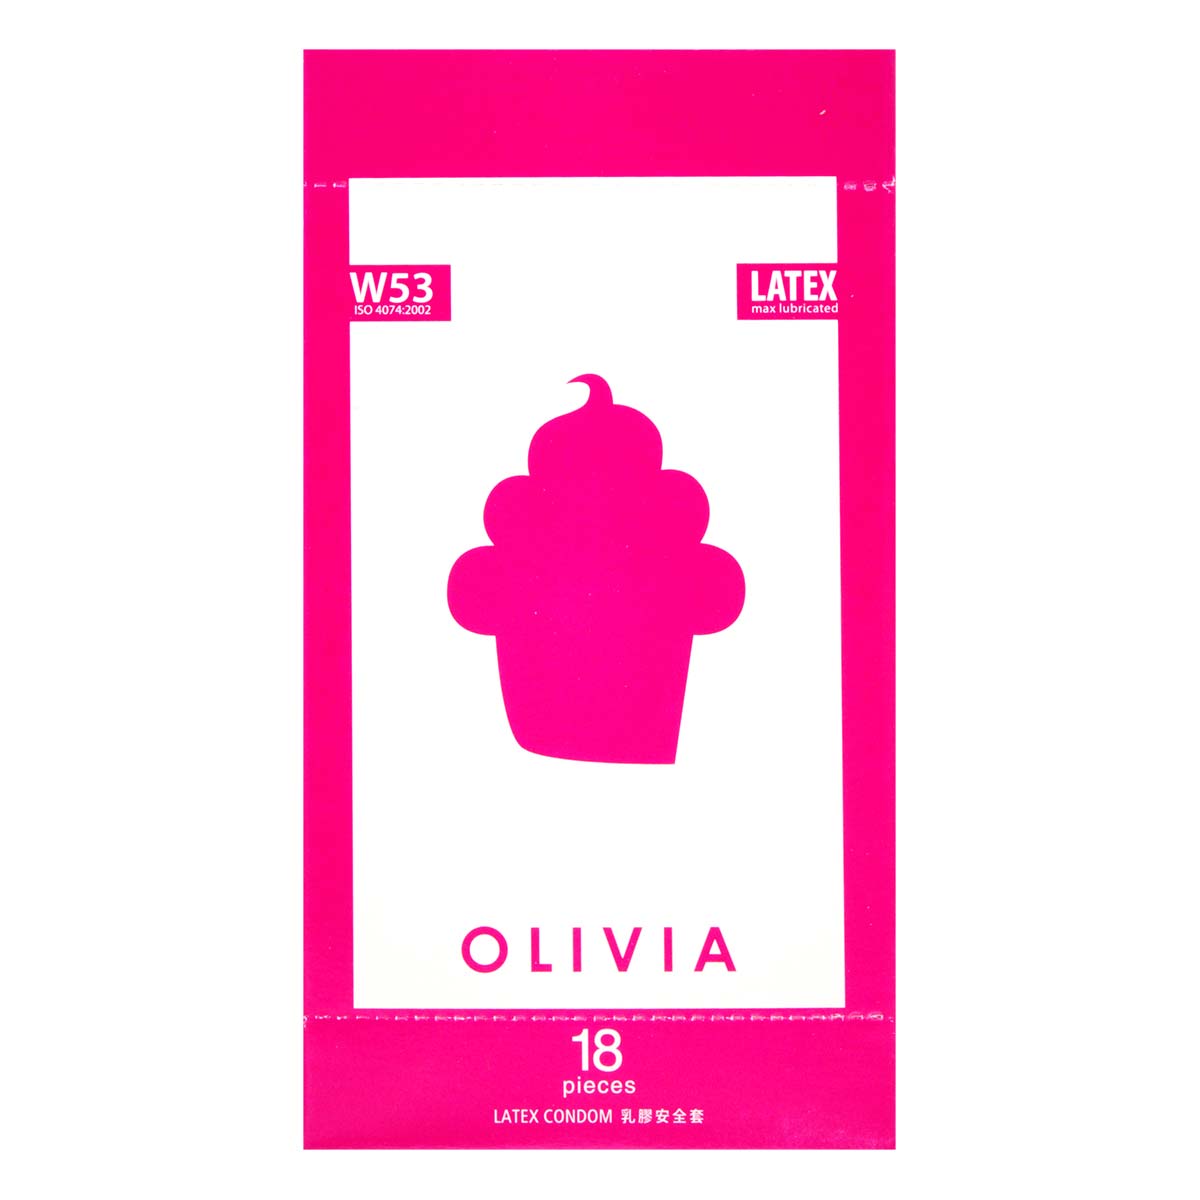 奧莉維亞 W53 系列最多潤滑劑型 18 片裝 乳膠安全套-p_2